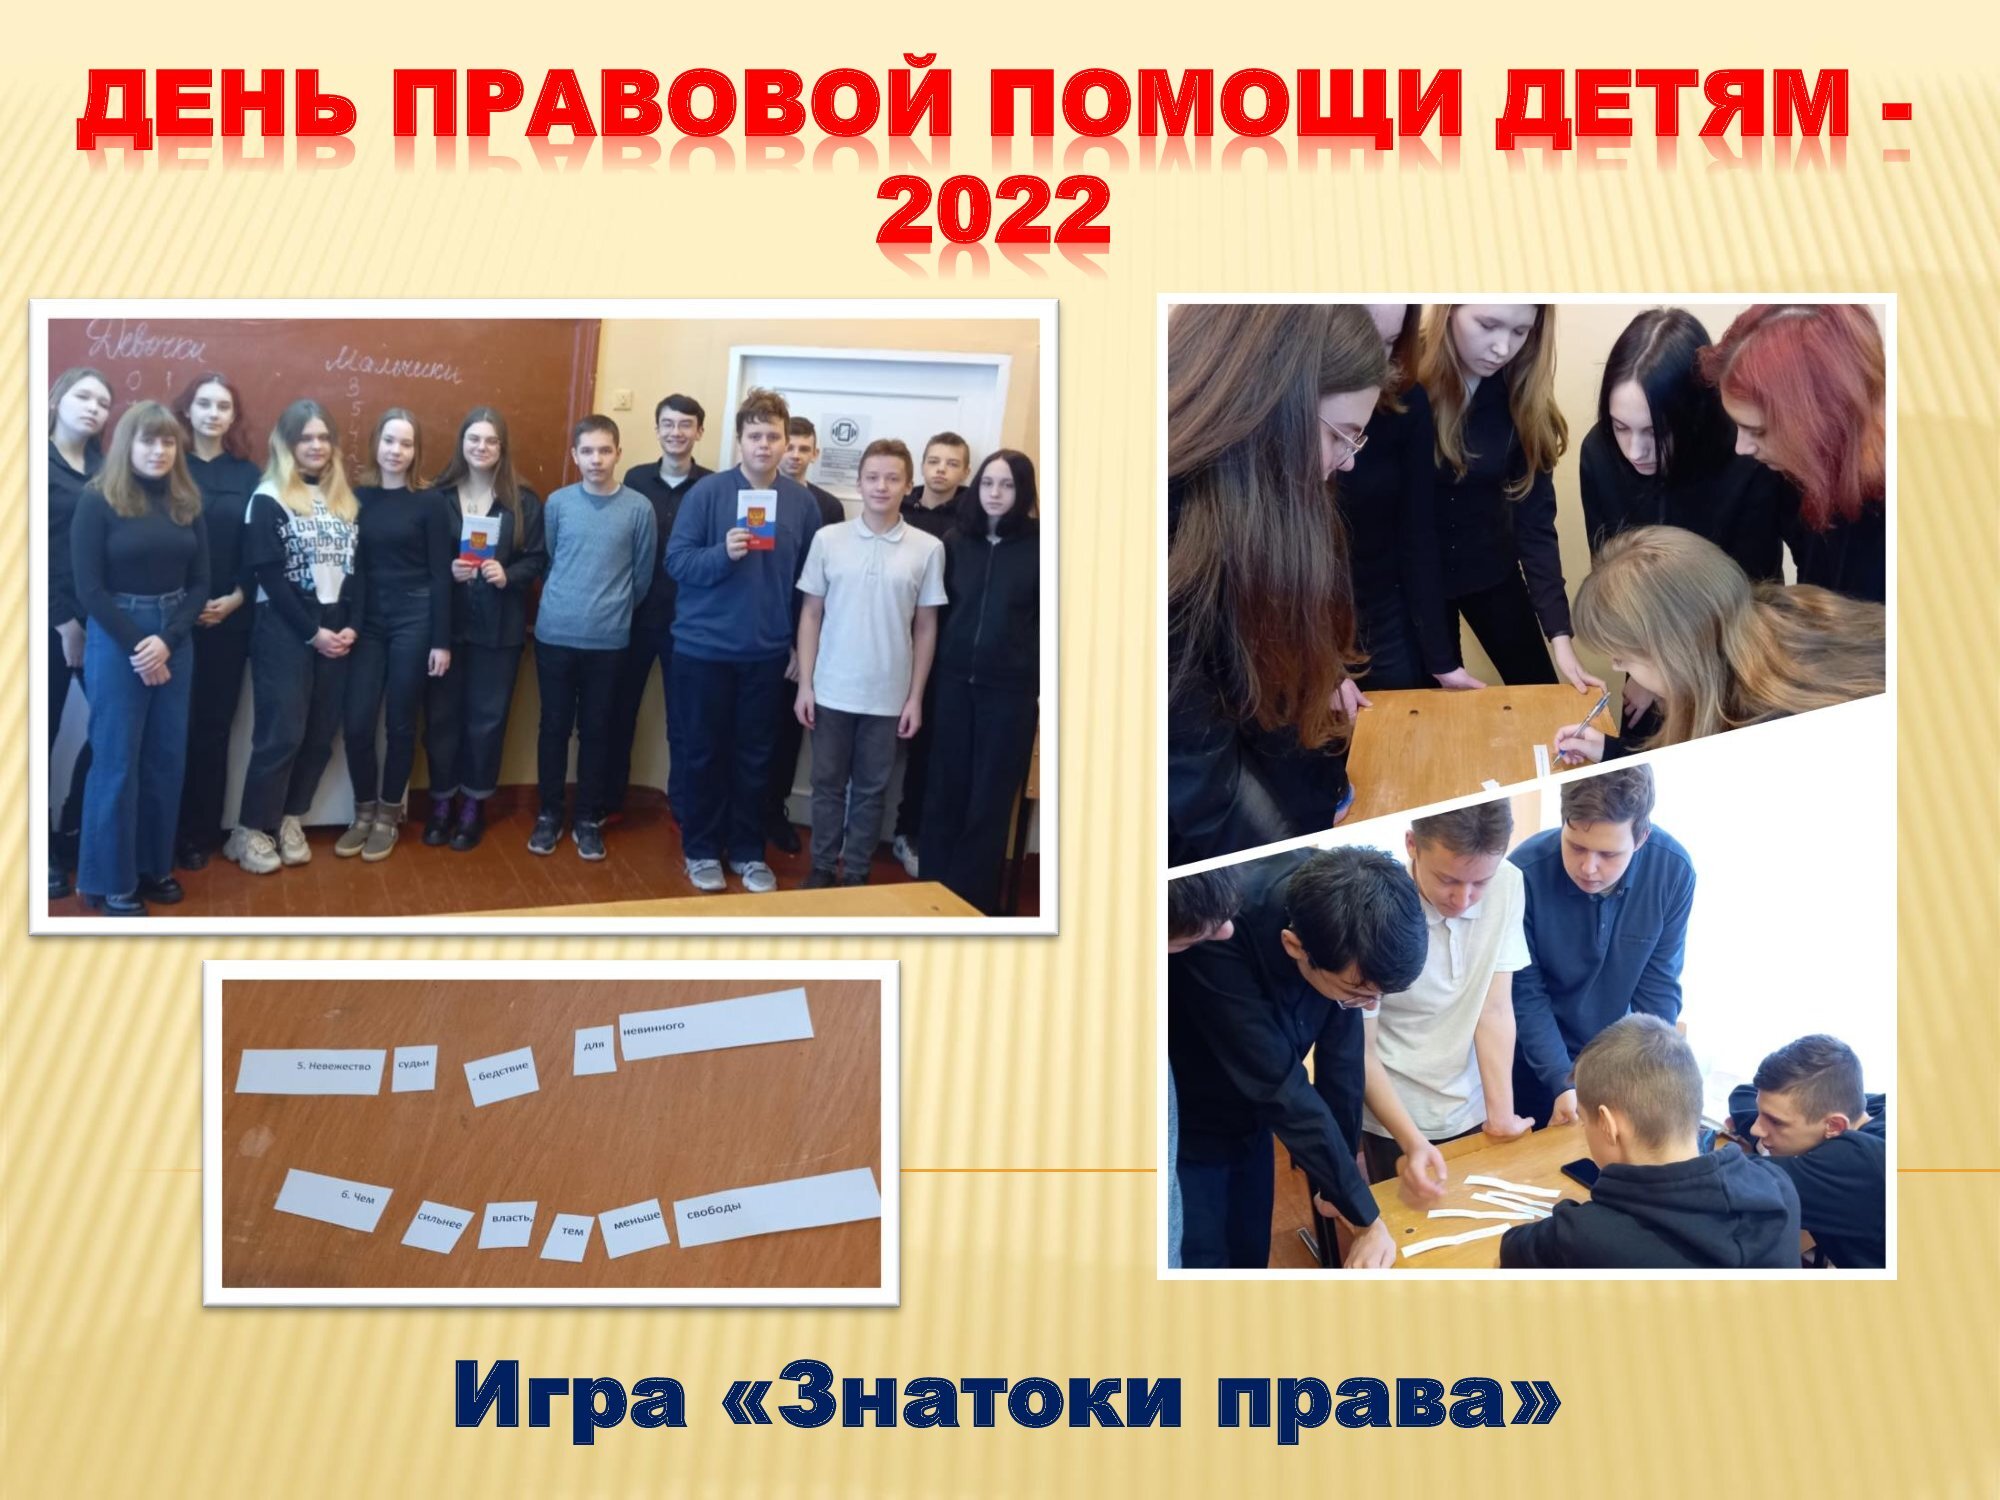 Всероссийский день правовой помощи детям 2022 картинки для детей